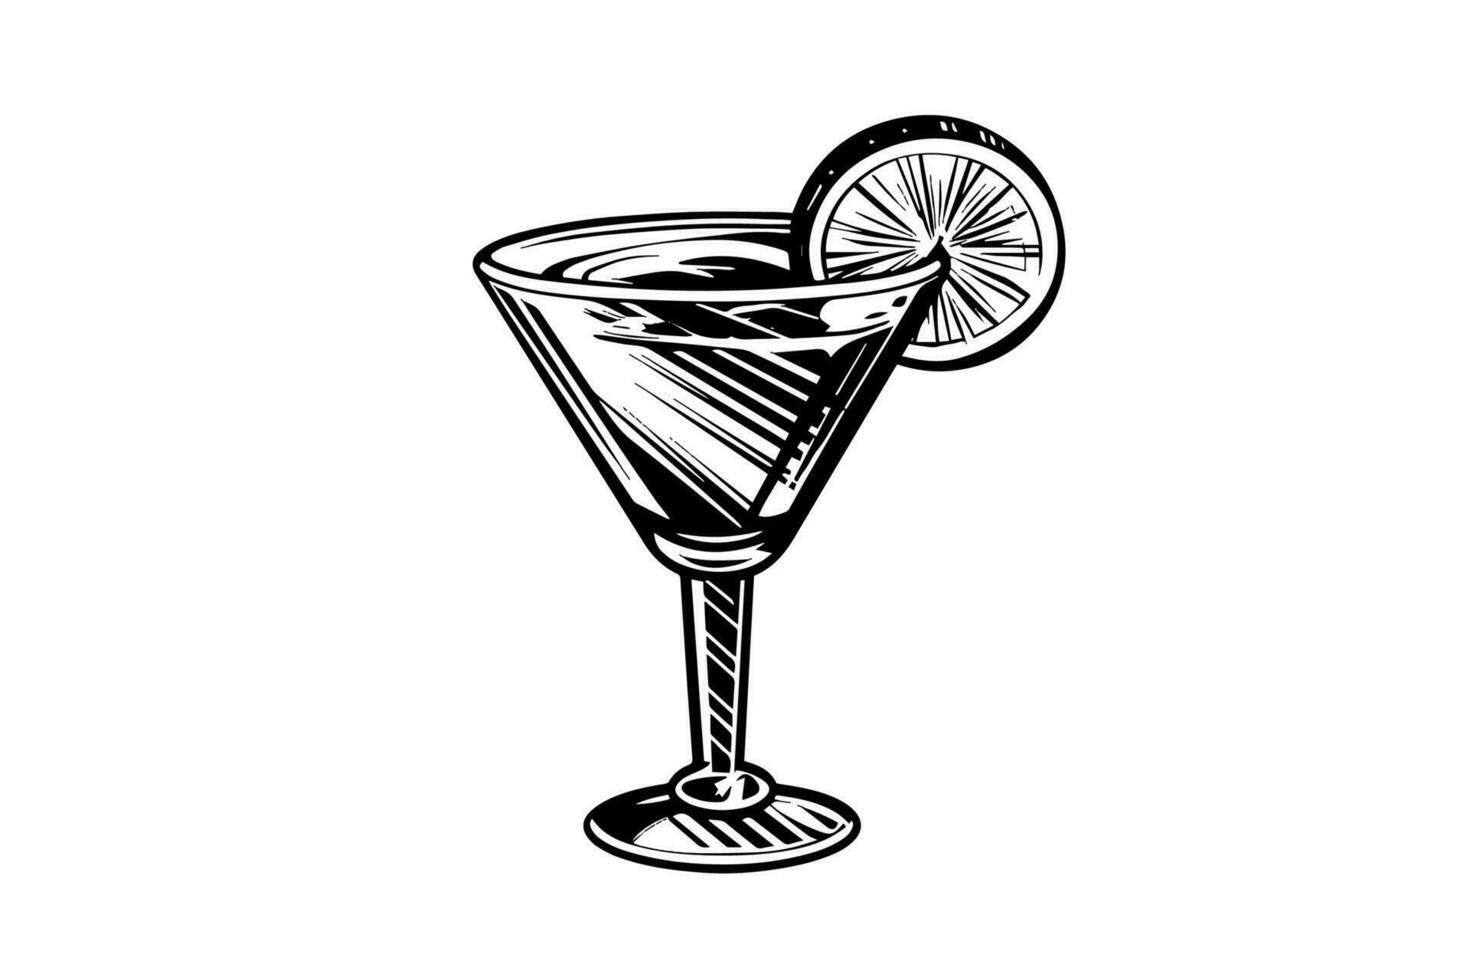 margarita cocktail graverat isolerat dryck vektor illustration. svart och vit skiss sammansättning